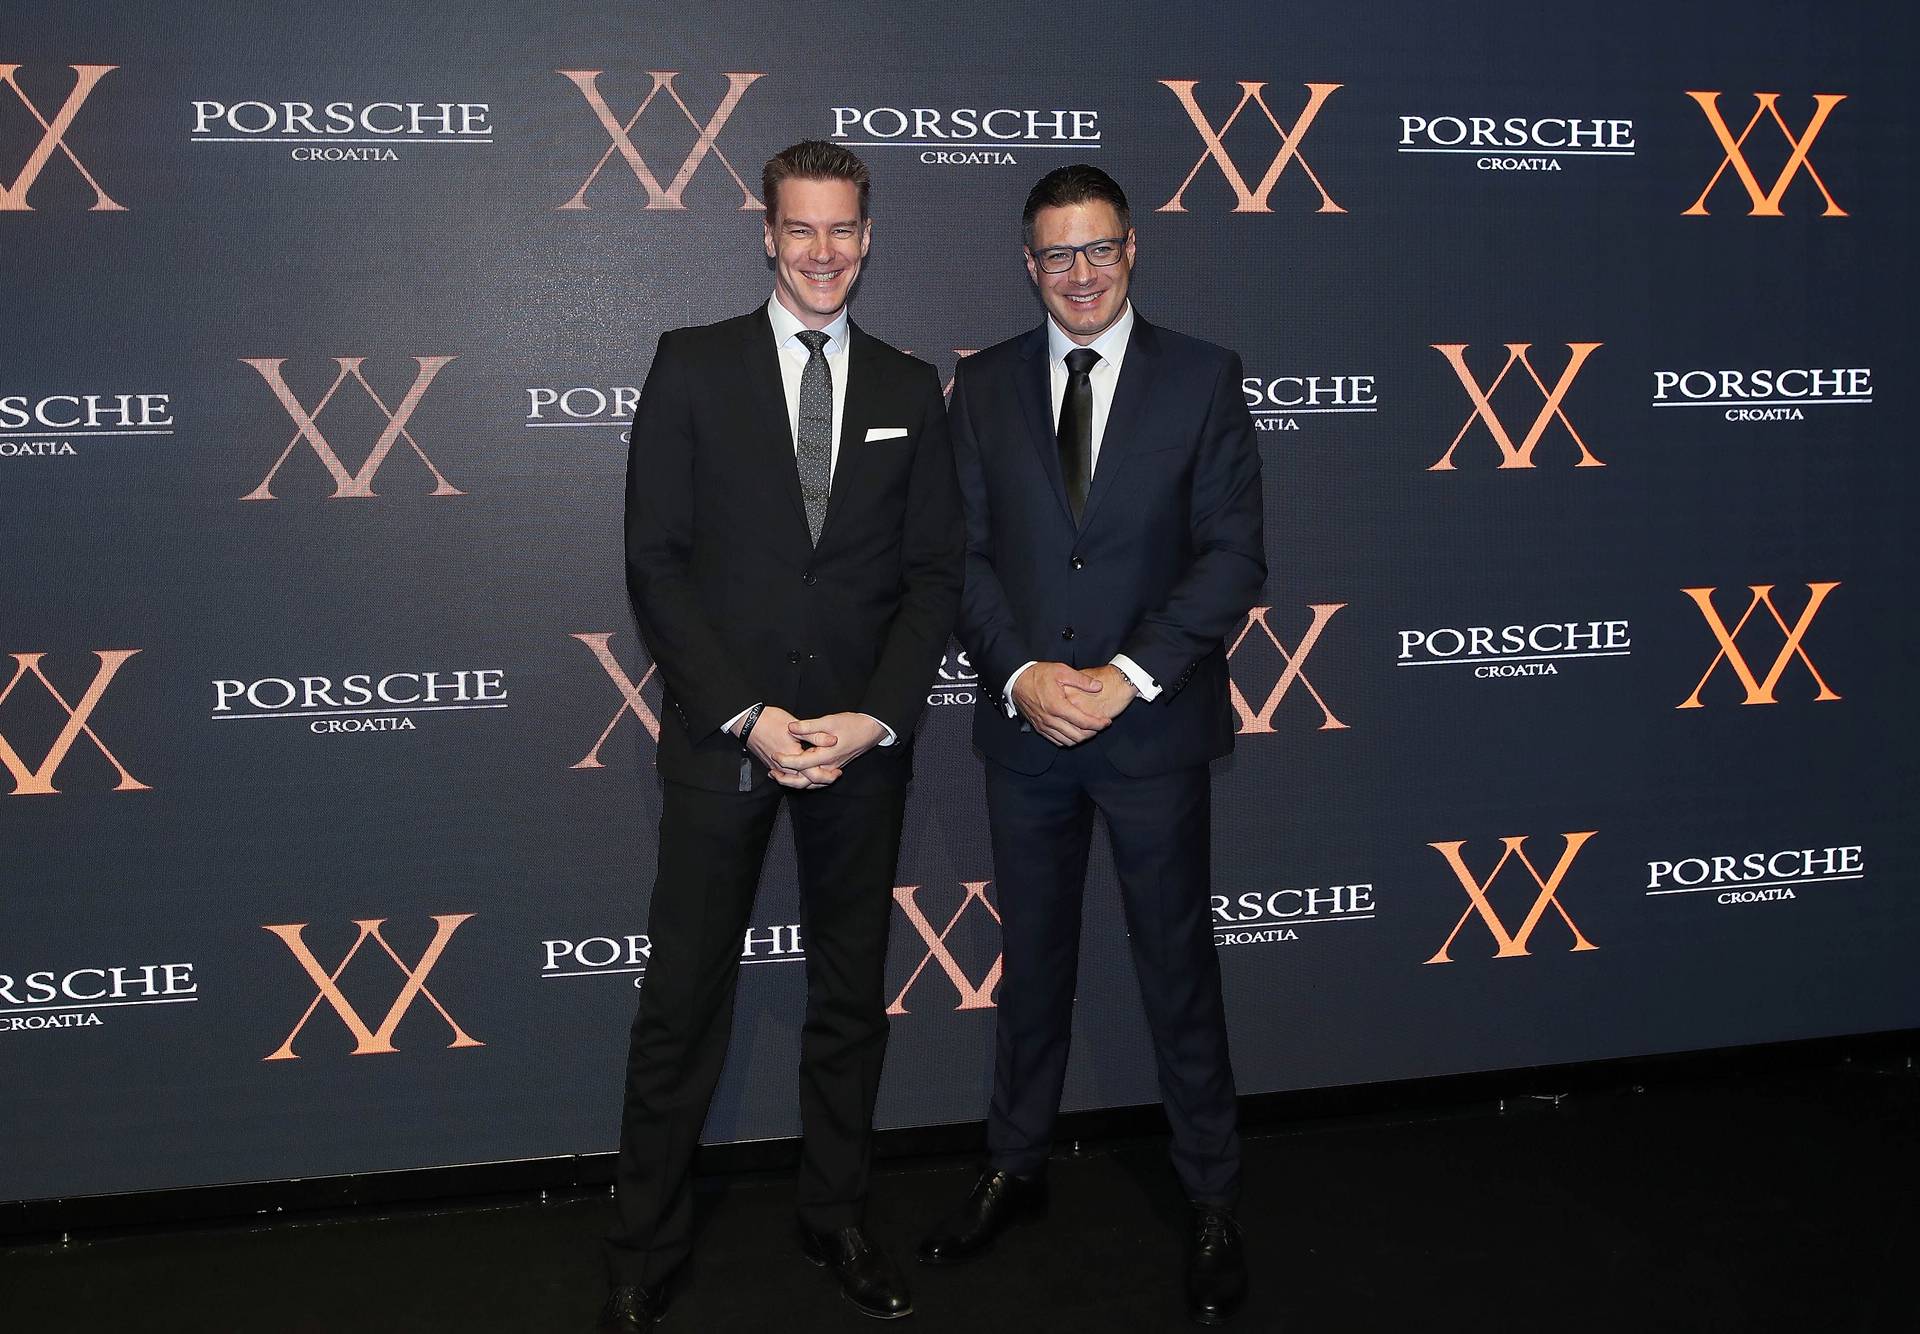 Porsche Croatia proslavio 20 godina poslovanja